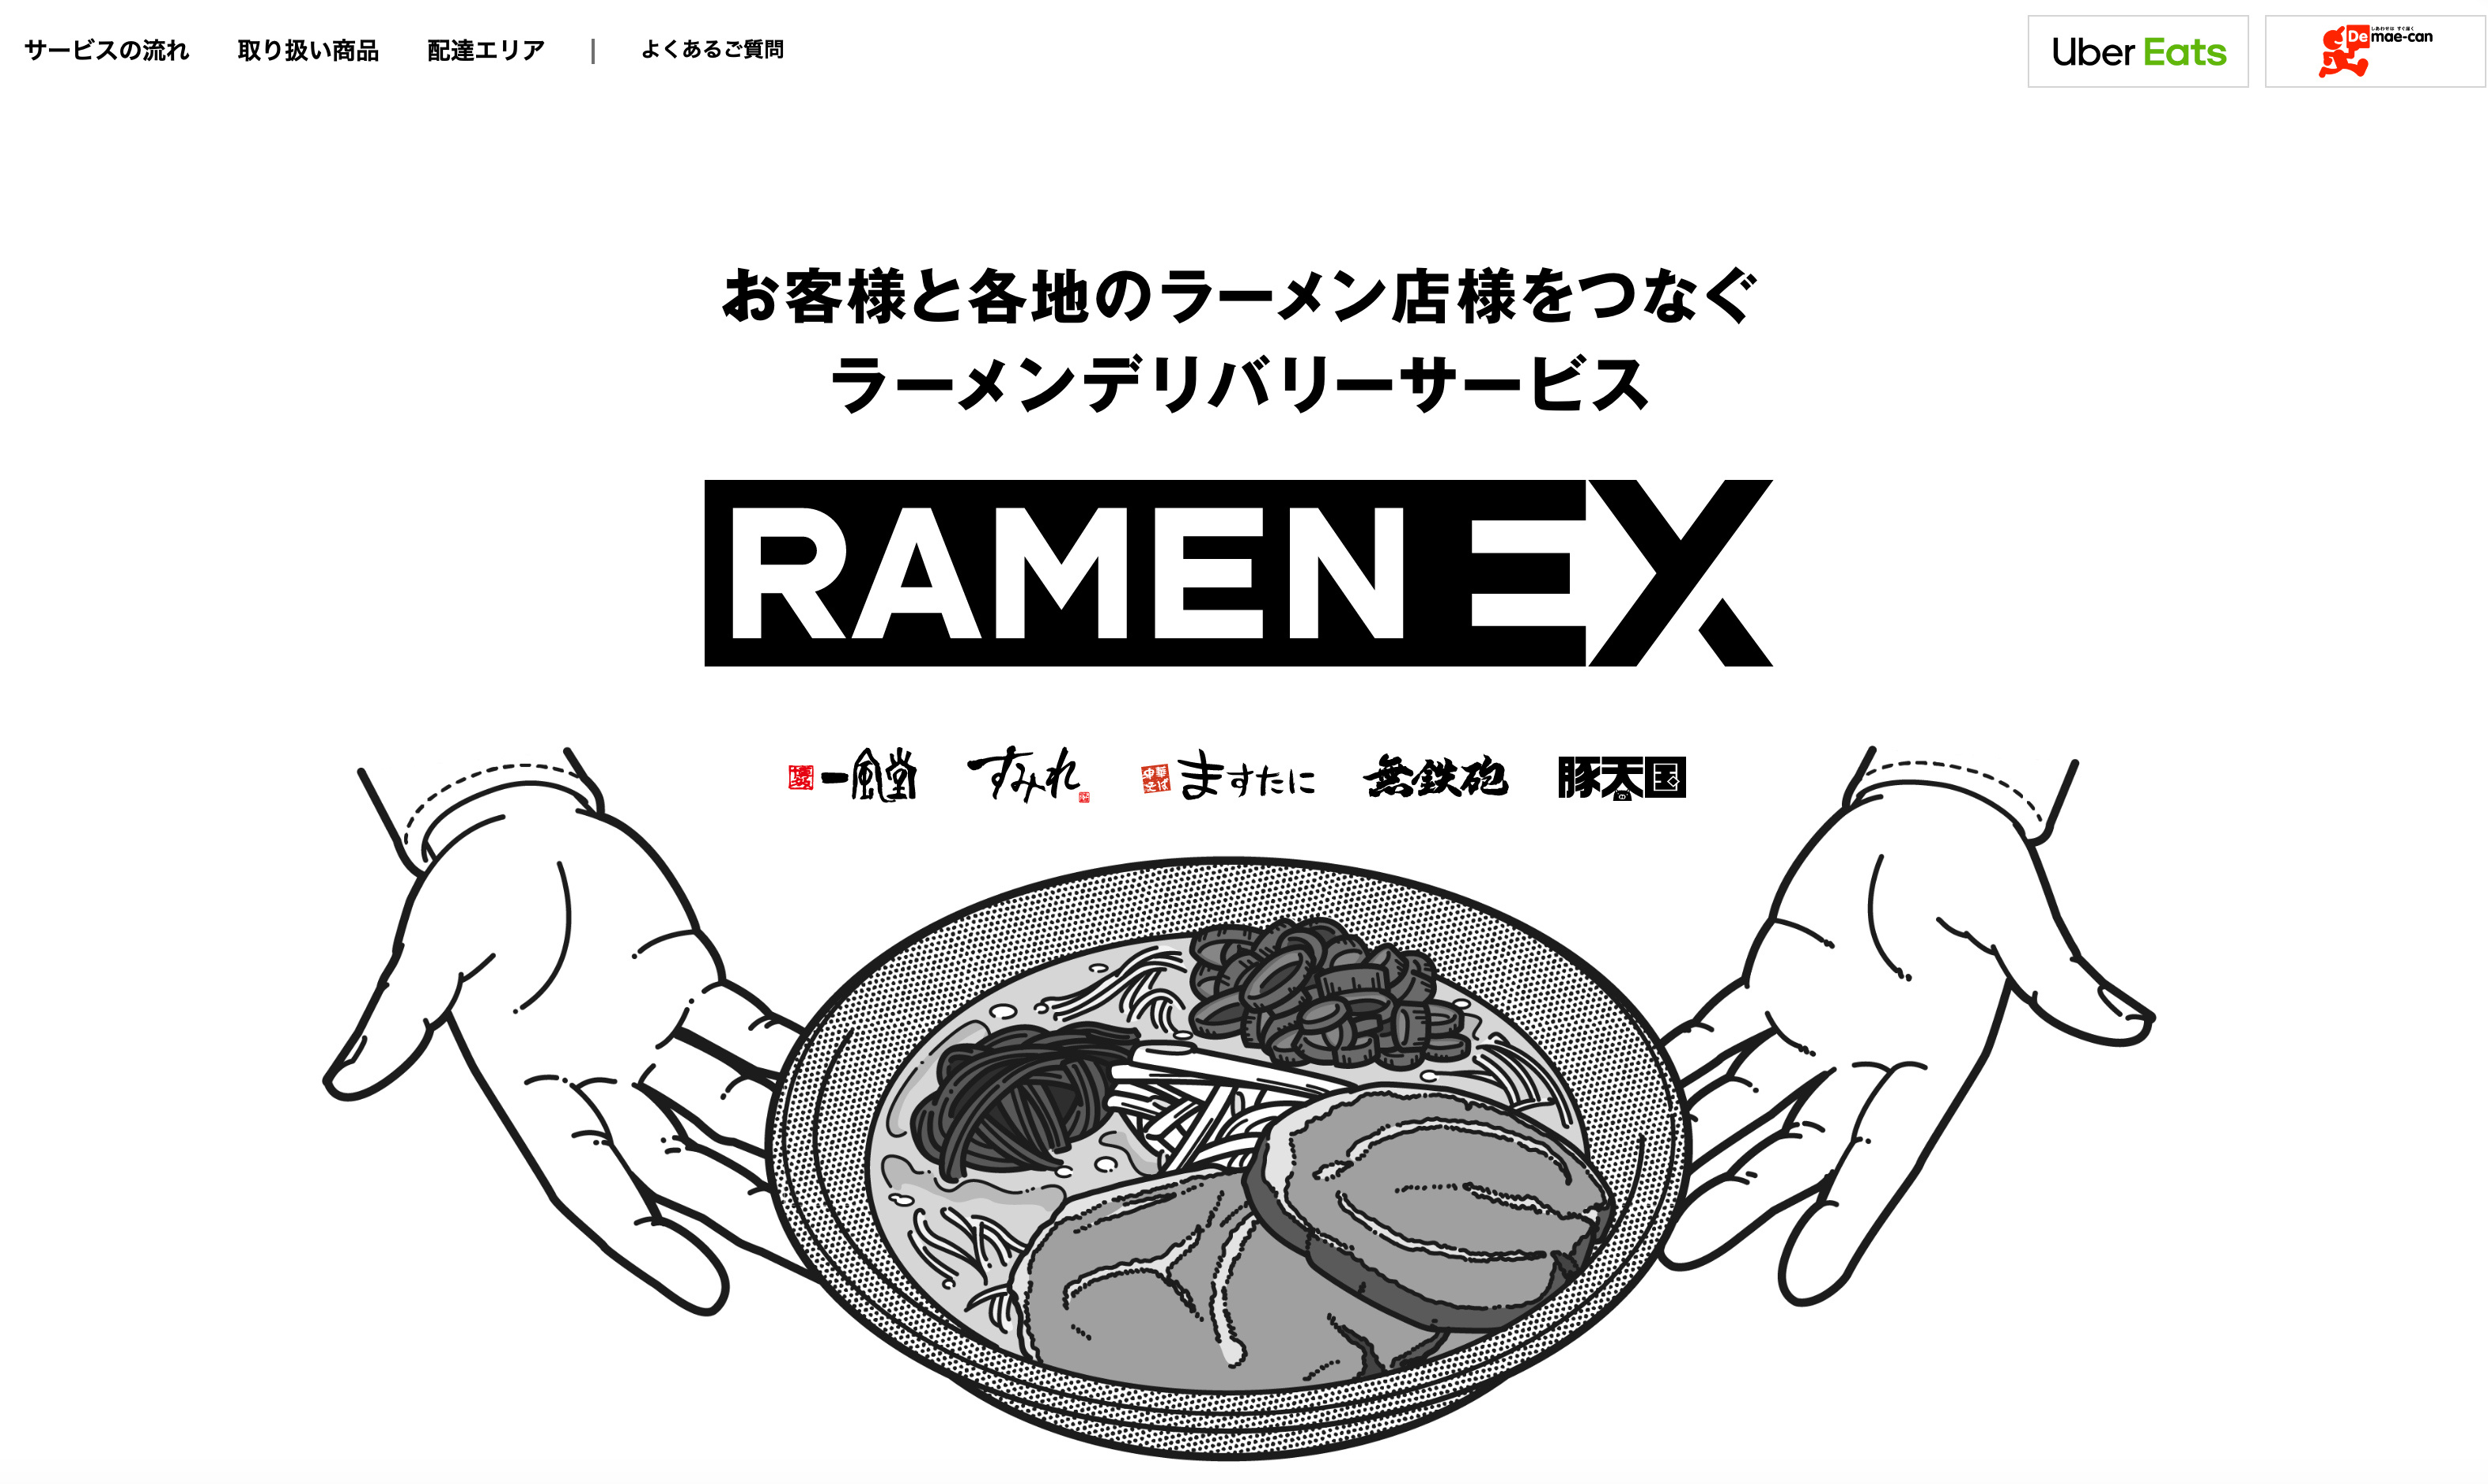 日清食品が、電子レンジで調理するラーメンの配送サービス「RAMEN EX 